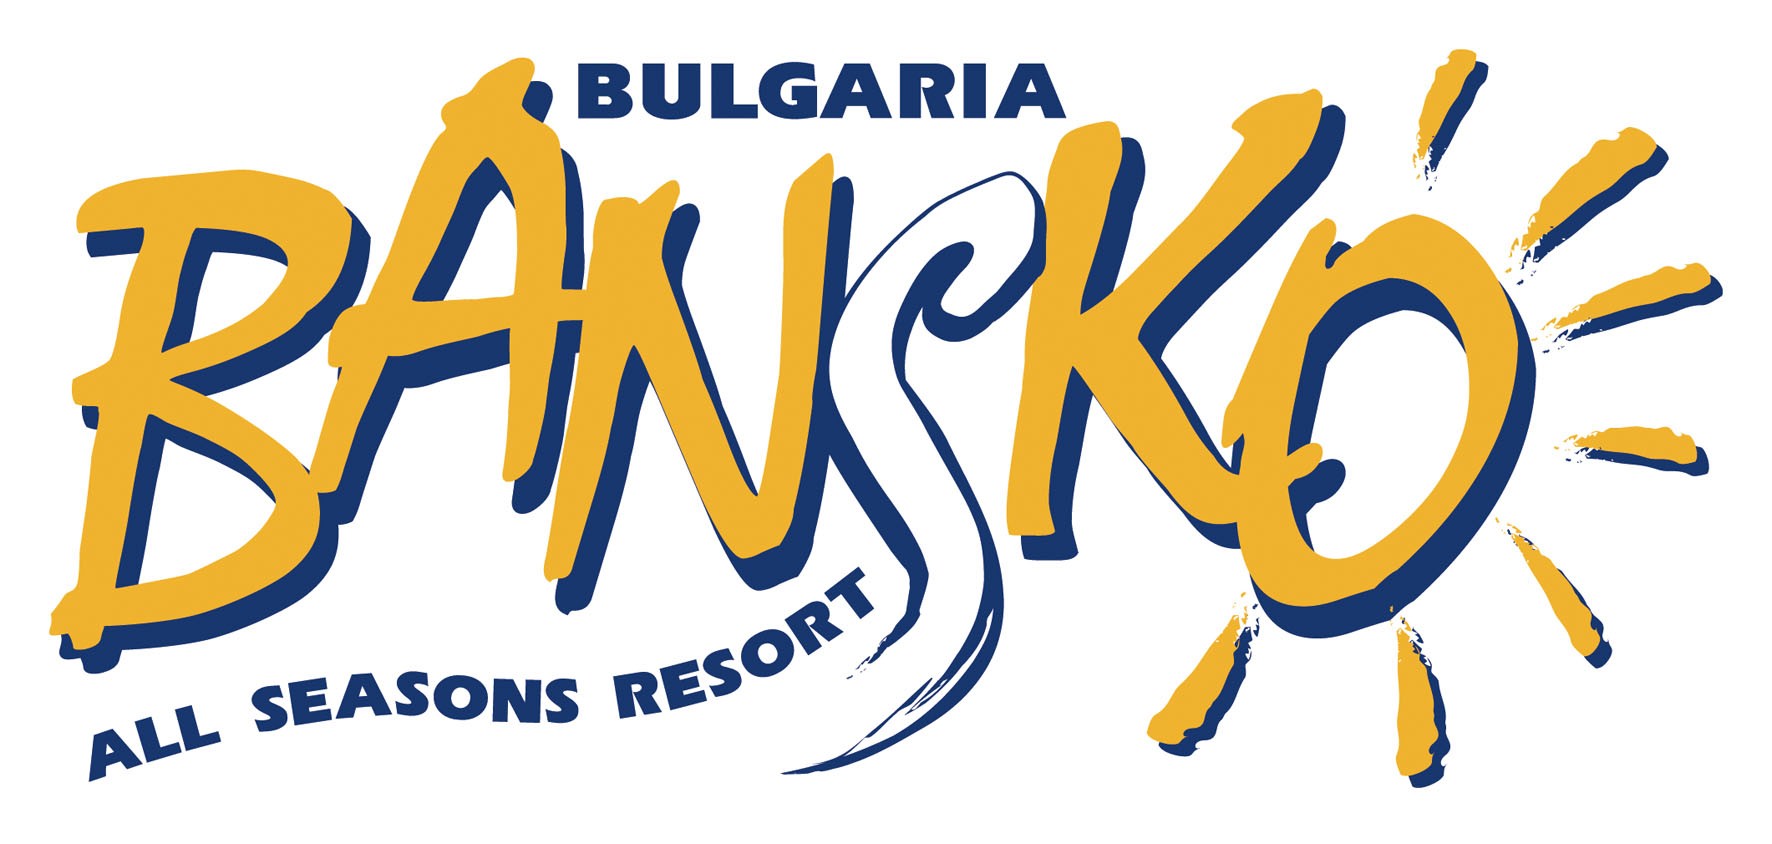 Φώτα 2013-2014 Εκδρομές από Θεσσαλονίκη Kempinski Grand Arena 5* (Ski in - Ski out) Υποχρεωτική επιβάρυνση εορταστικού στις 24/12 ή 25/12 με 50 / άτομο & 25 / παιδί / Deluxe Town View 24-26/12 205